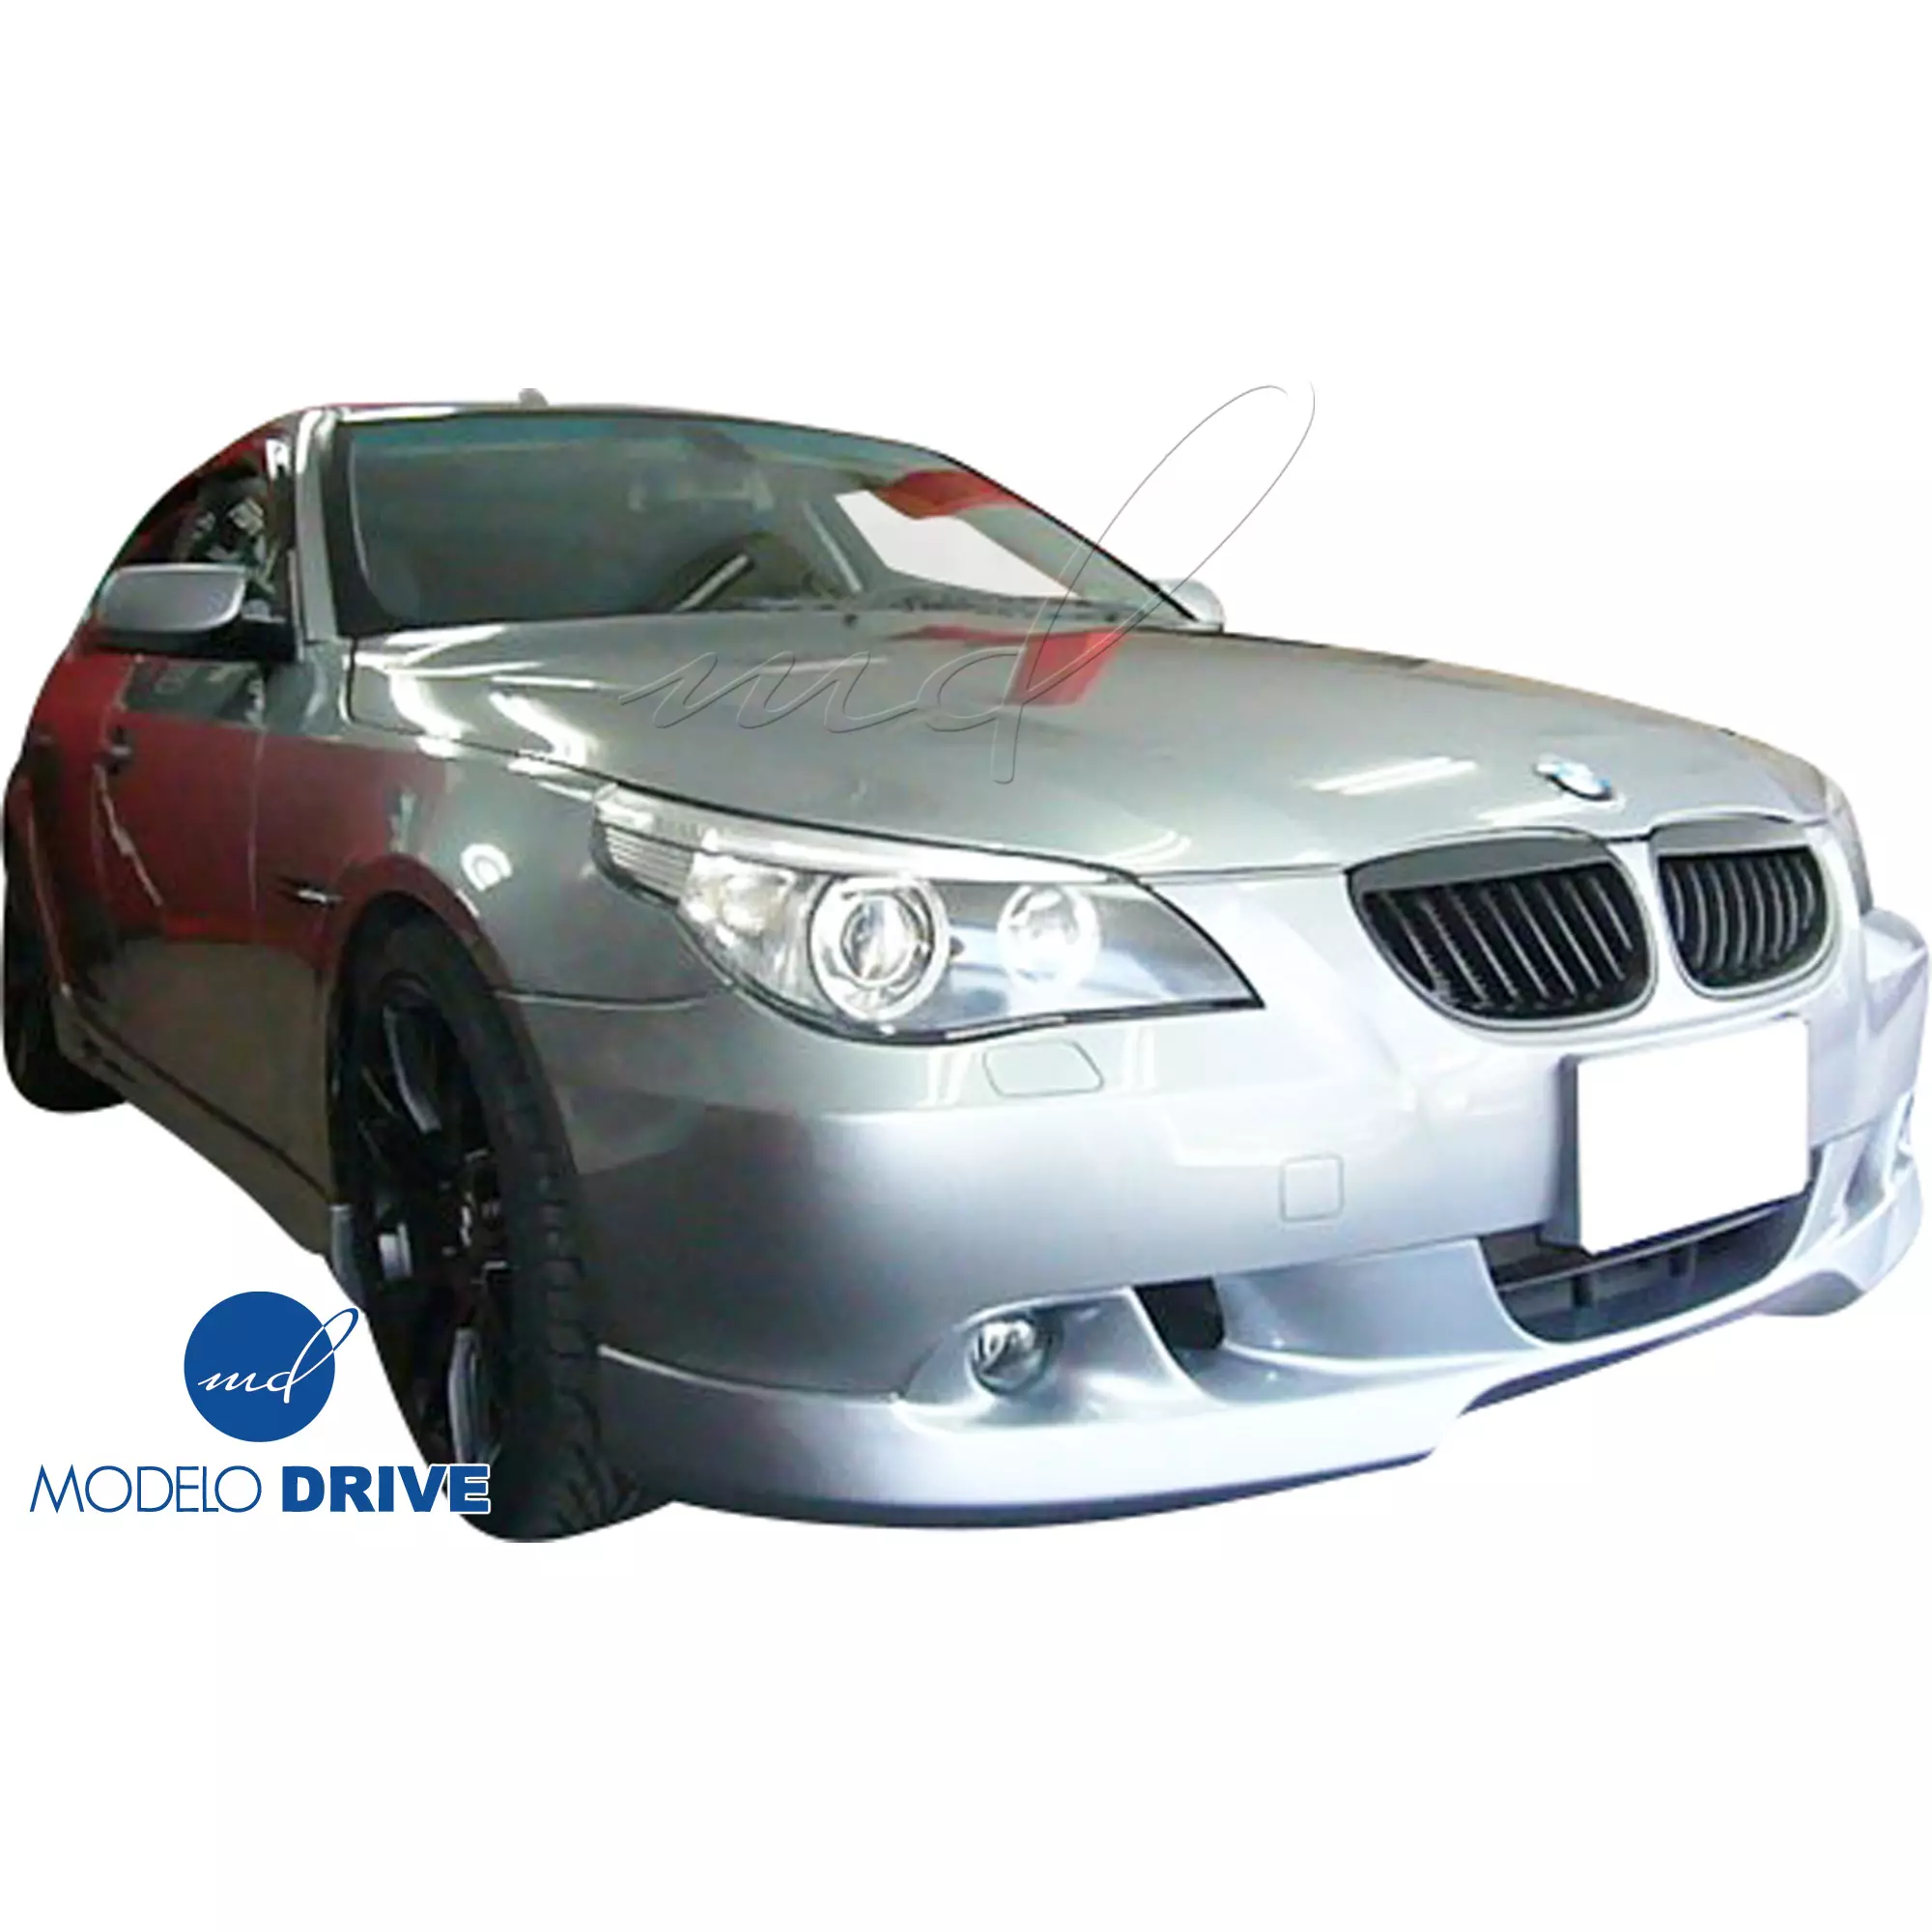 ModeloDrive FRP ASCH Body Kit 4pc > BMW 5-Series E60 2004-2010 > 4dr - Image 2